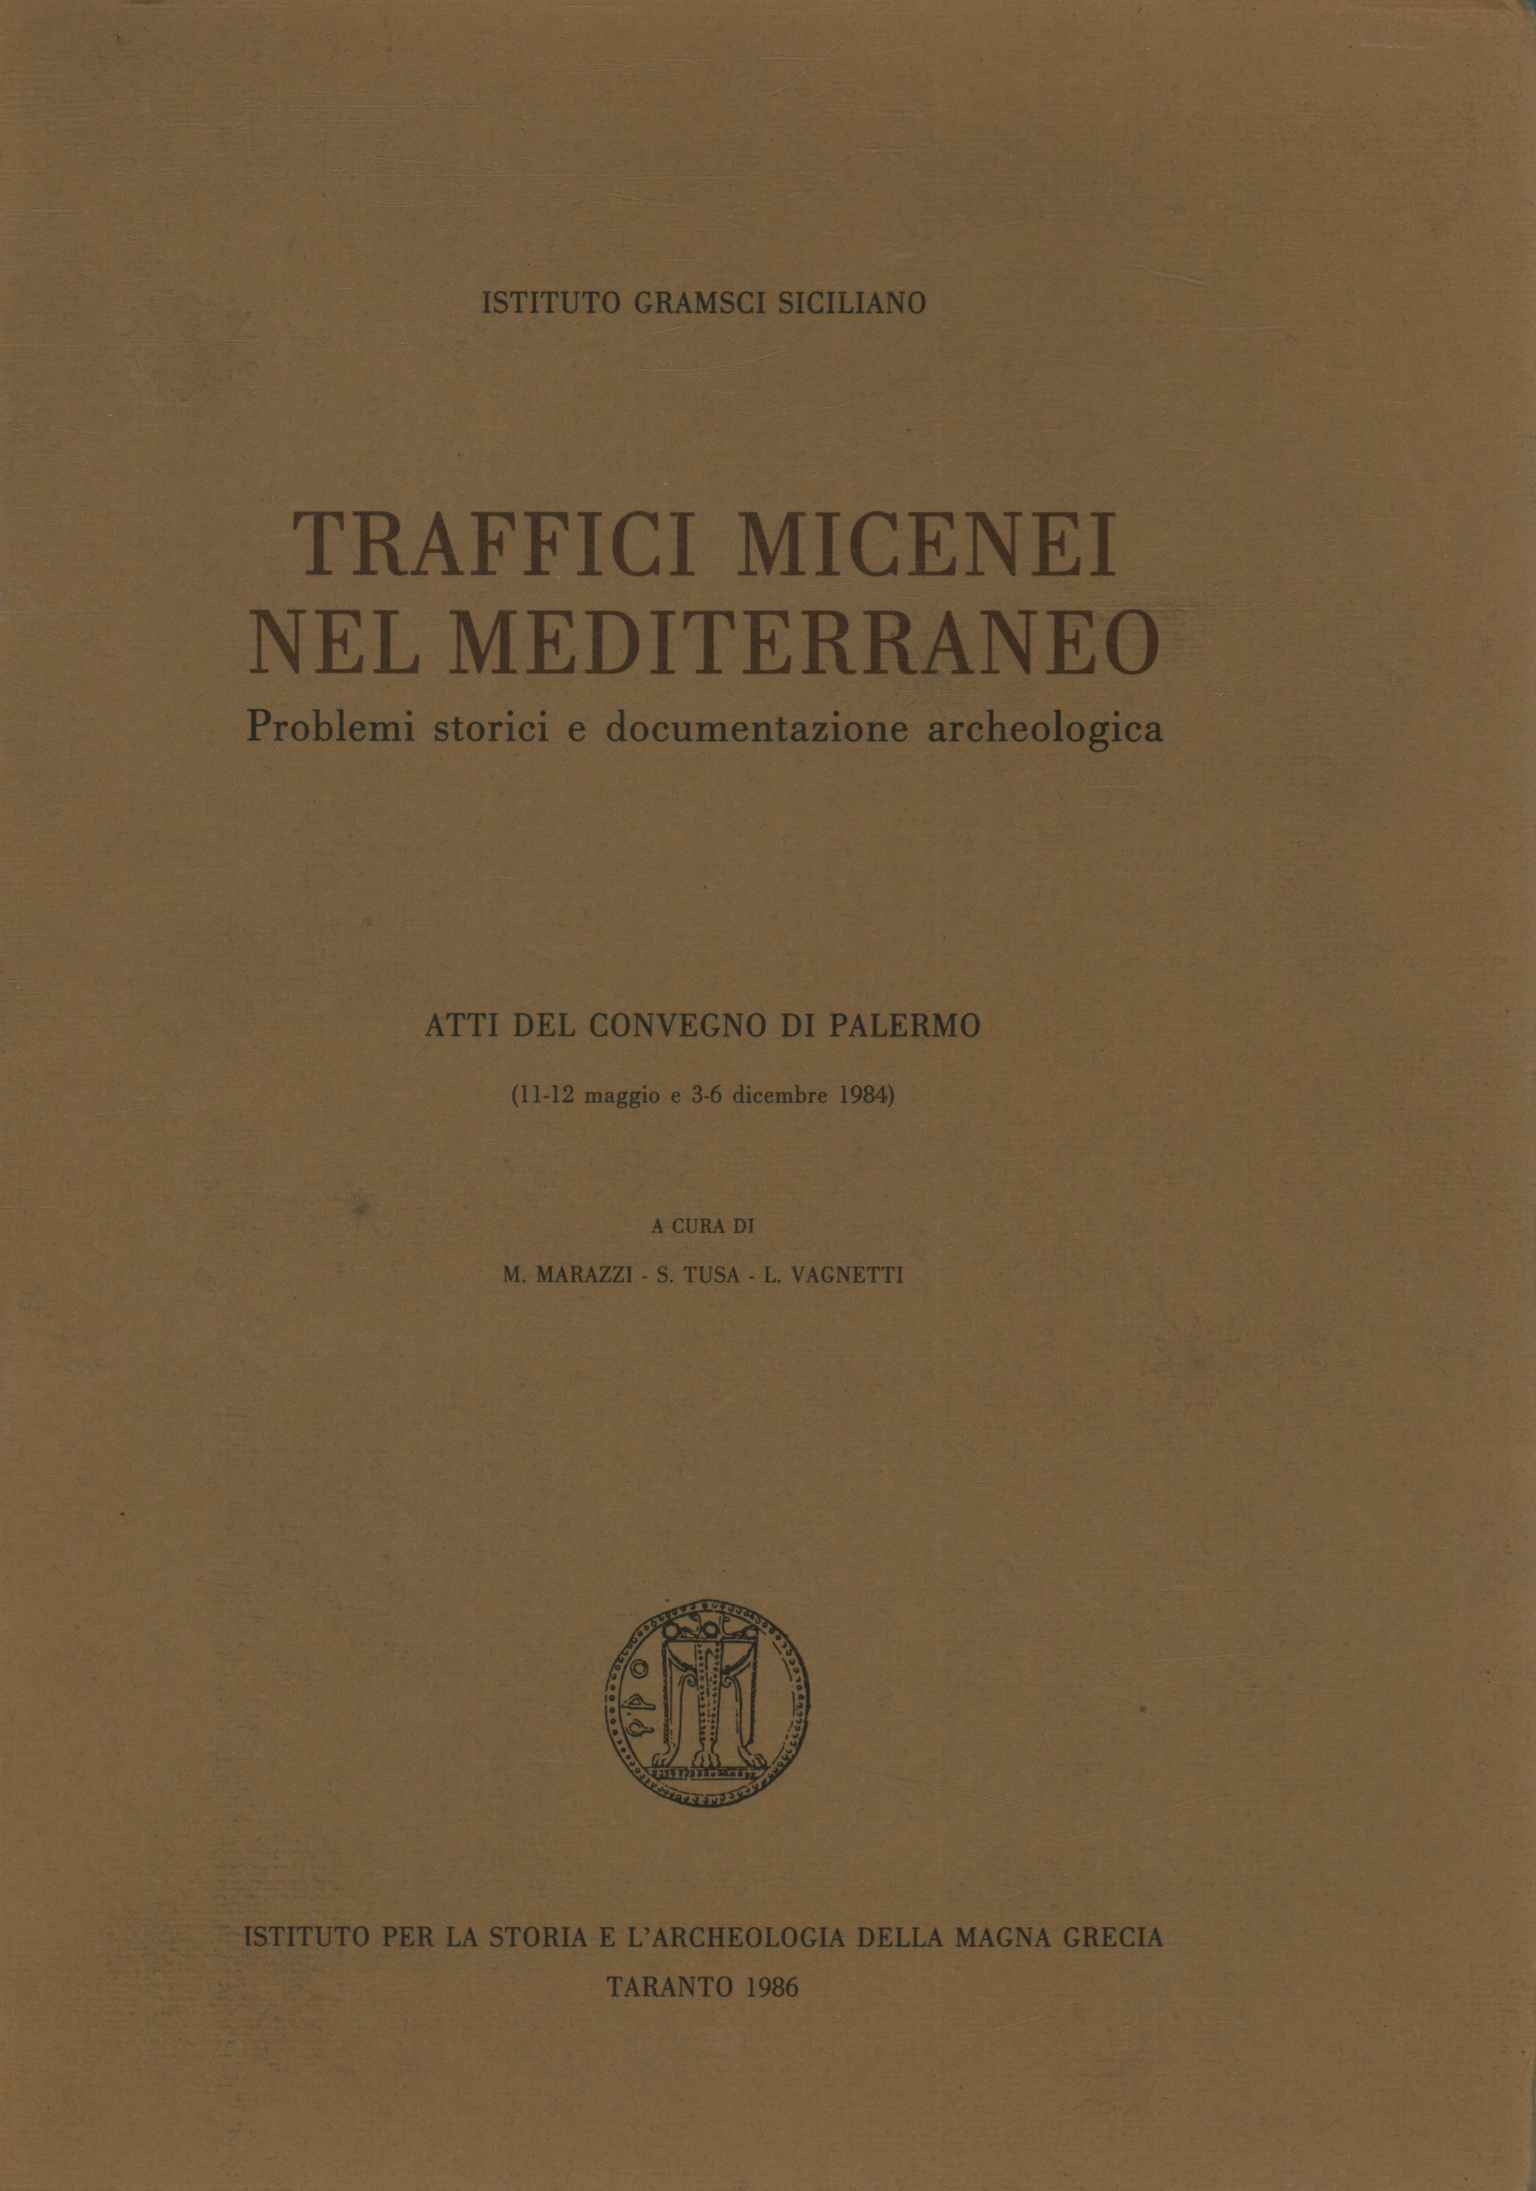 Mykenischer Verkehr im Mittelmeer